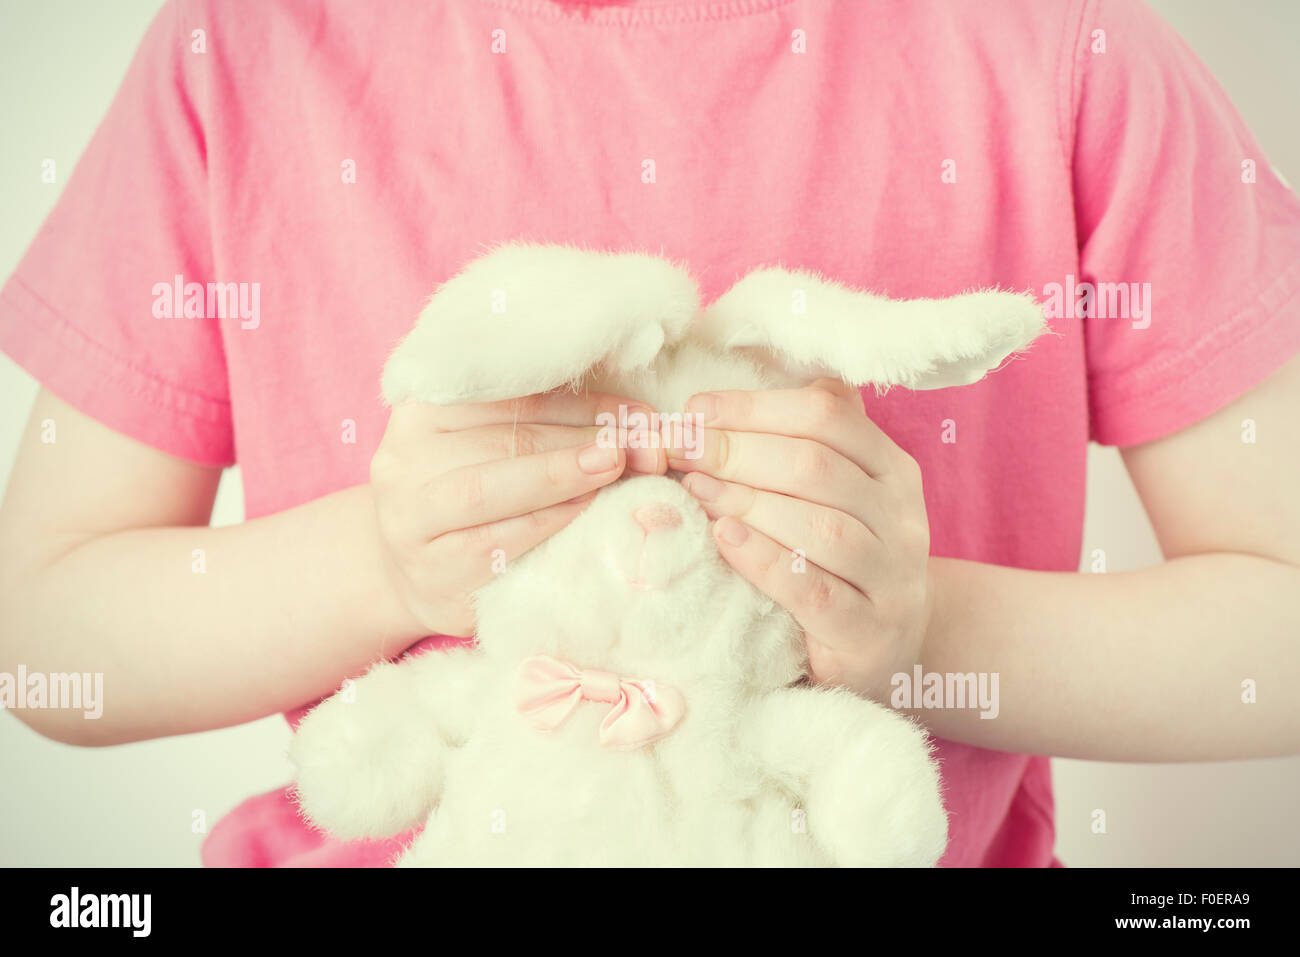 Kleines Mädchen Stofftier Tier mit den Händen zu halten. Sie deckt die Augen des Kaninchens Spielzeug. Konzeptbild von Kindheit Unsicherheit, Unschuld und Verletzlichkeit. Stockfoto